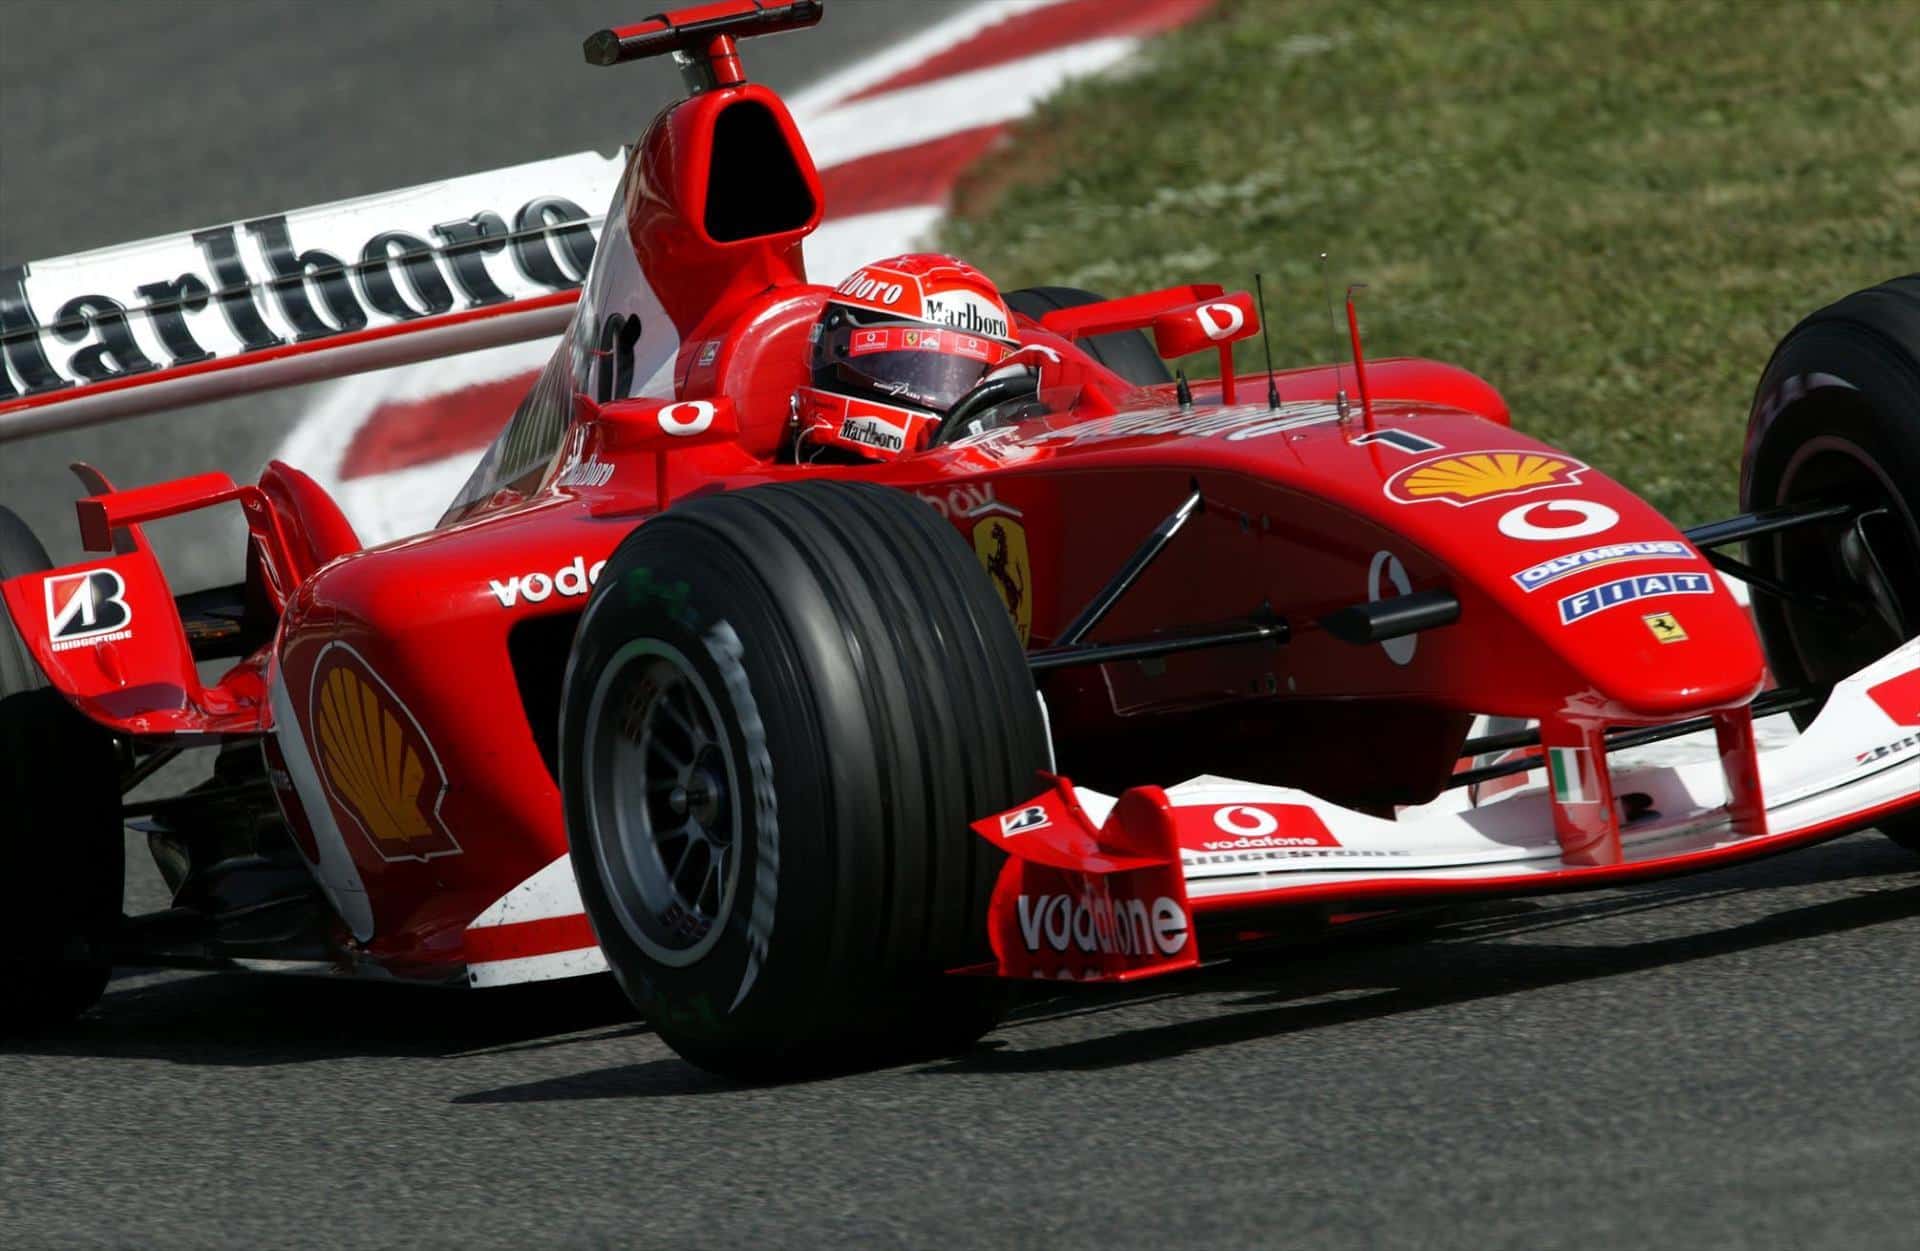 Mobil Balap Milik Michael Schumacher Laku Terjual Hingga Rp 235 Miliyar, Memecahkan Rekor Dunia